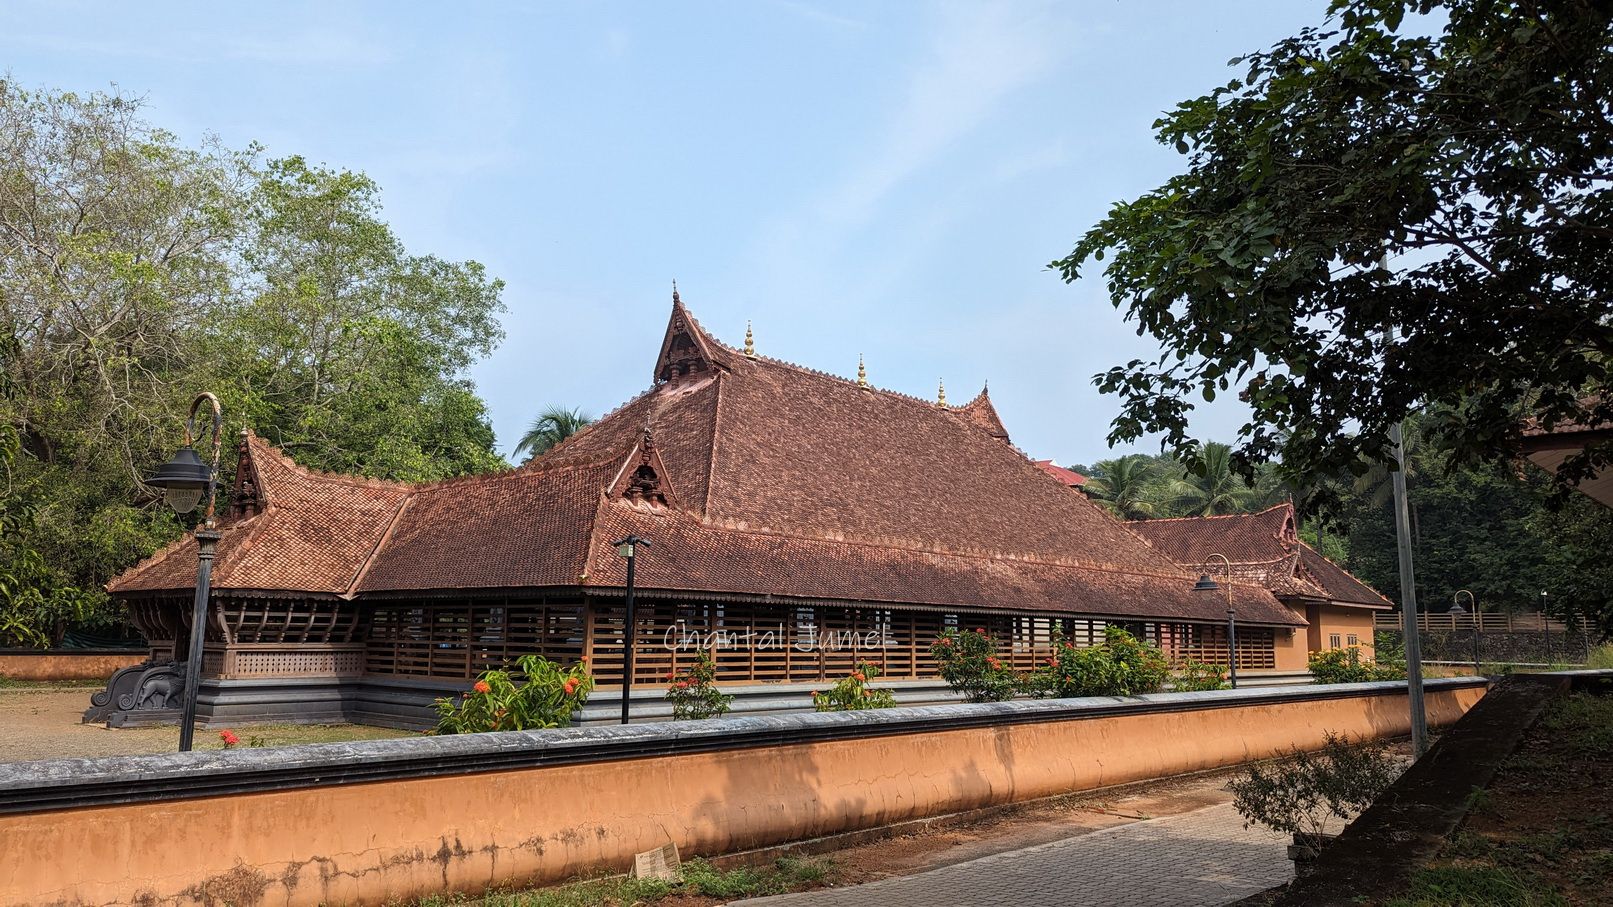 Kalam du Kérala, " Visiter l'école du Kalamandalam " — partie 2